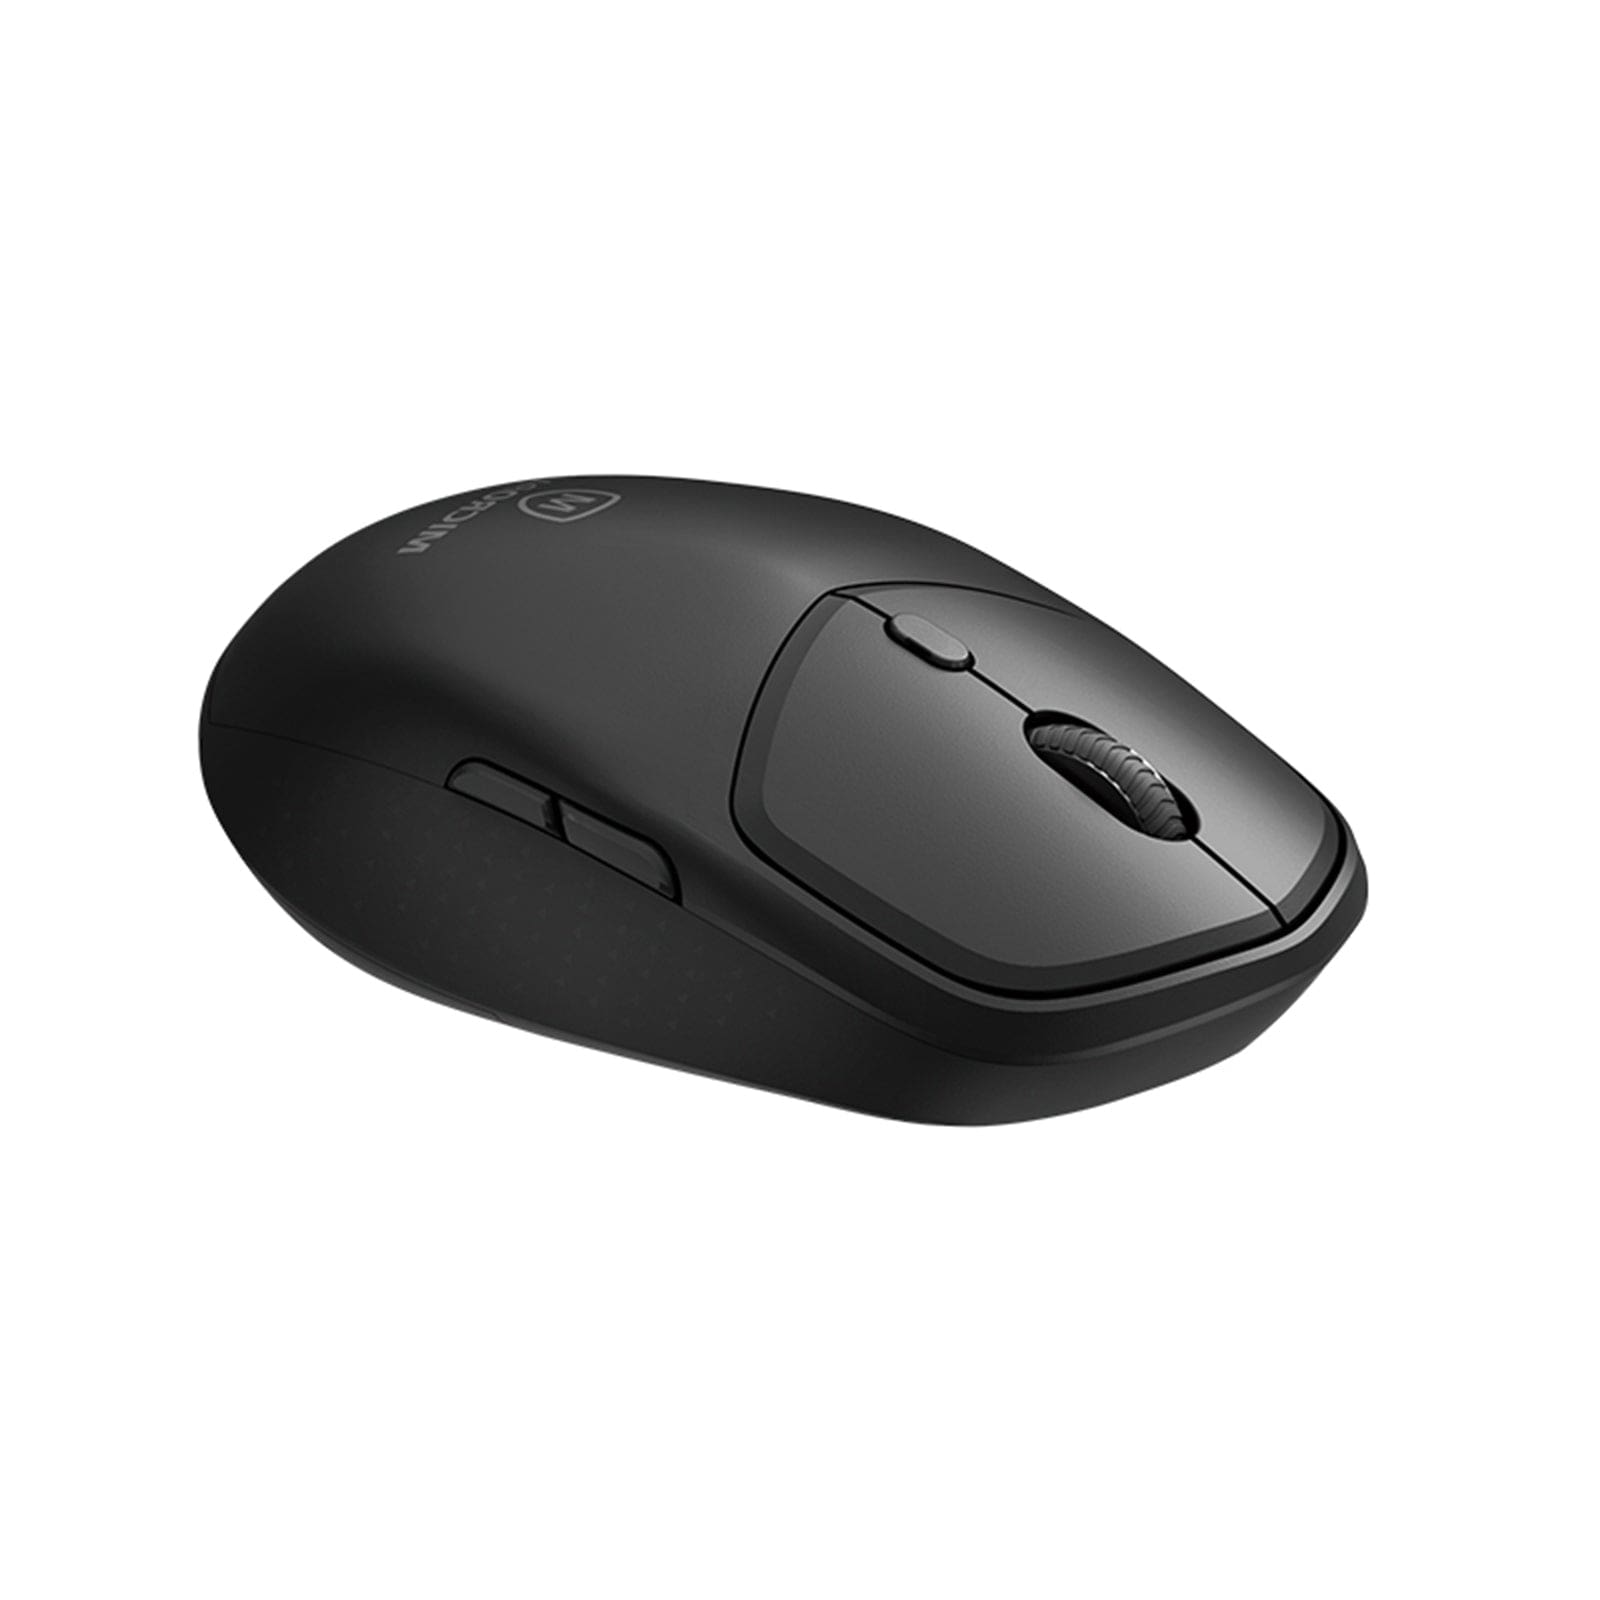 2.4G Wireless Mouse 1600 DPI Nano Receiver for Laptop PC Macbook Optical Sensor